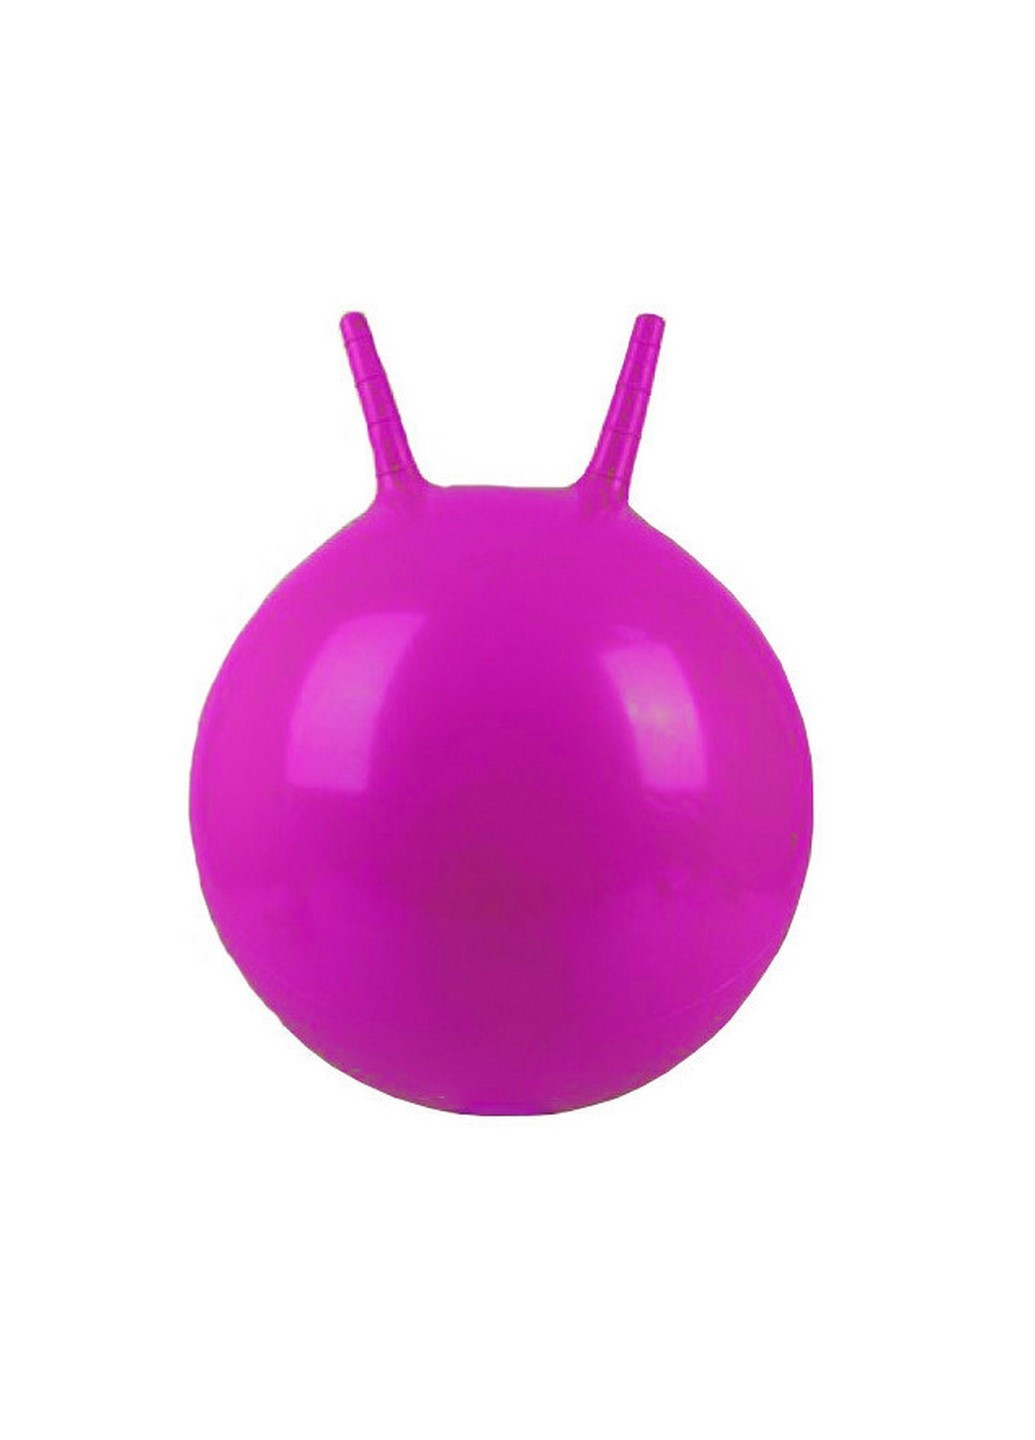 М'яч для фітнесу з ріжками MS 0380 45см (Фіолетовий) Profi (238105159)